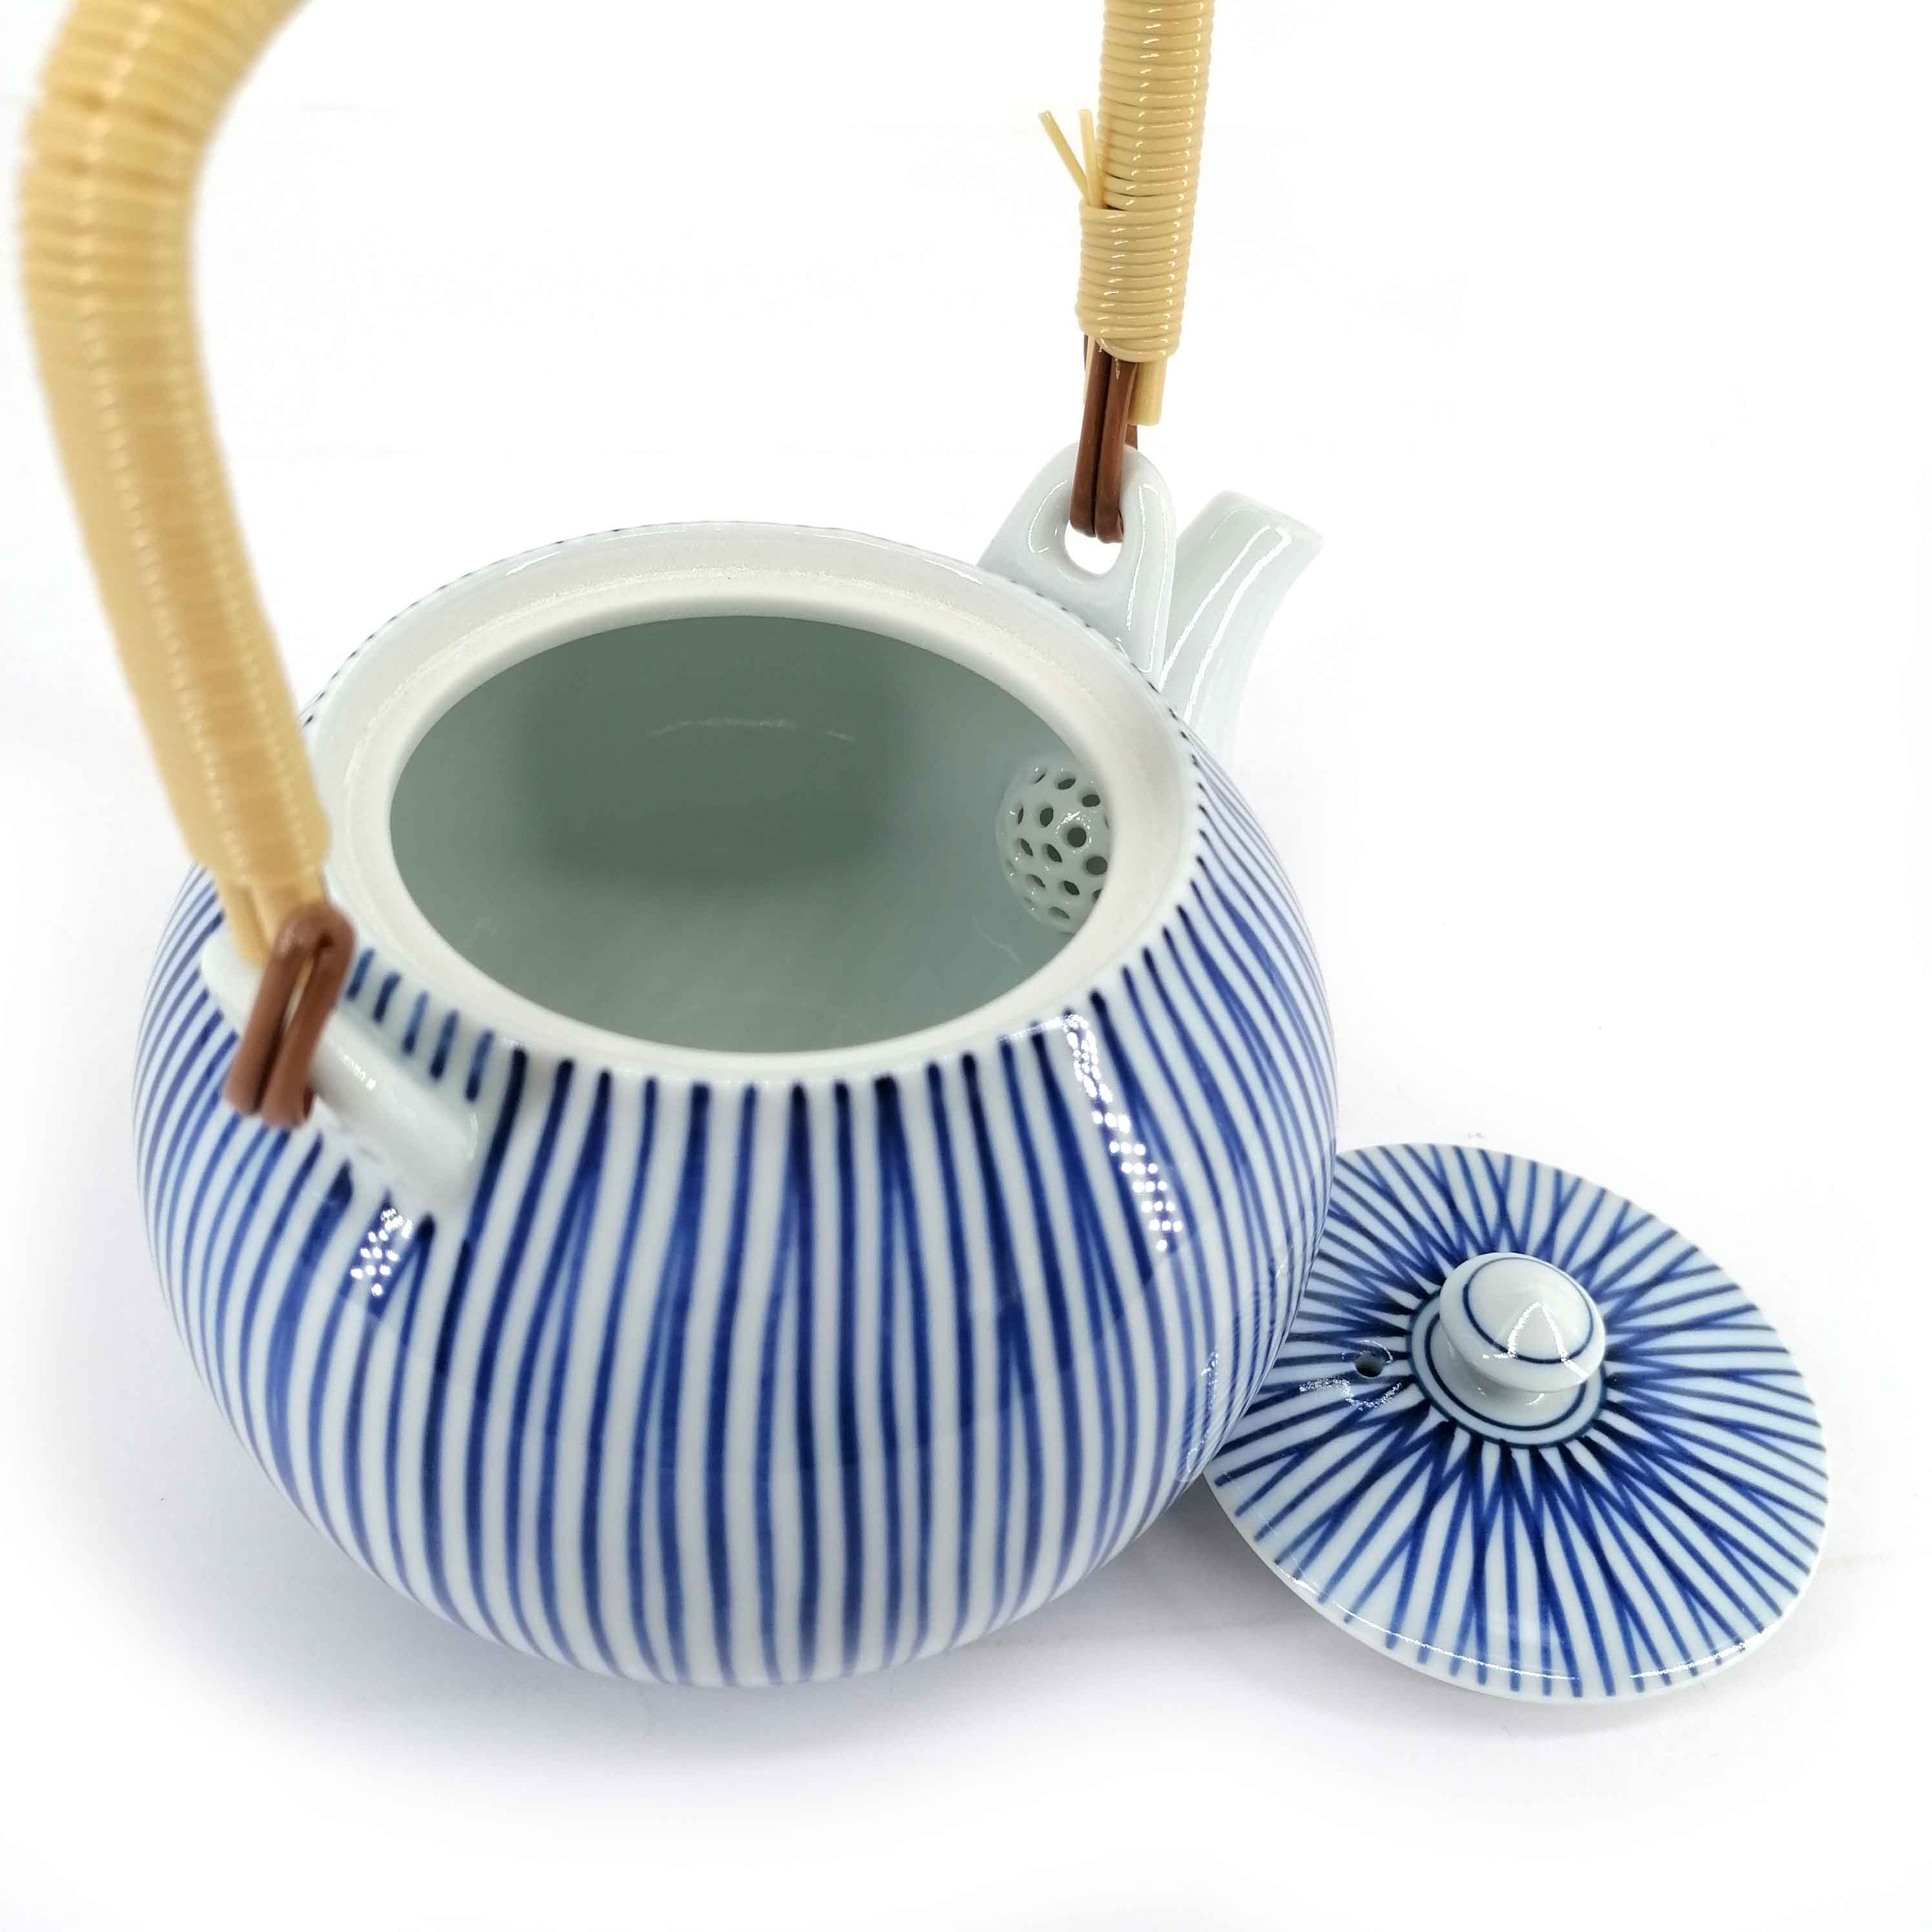 Théière japonaise en céramique avec anse, blanc, rayures bleues